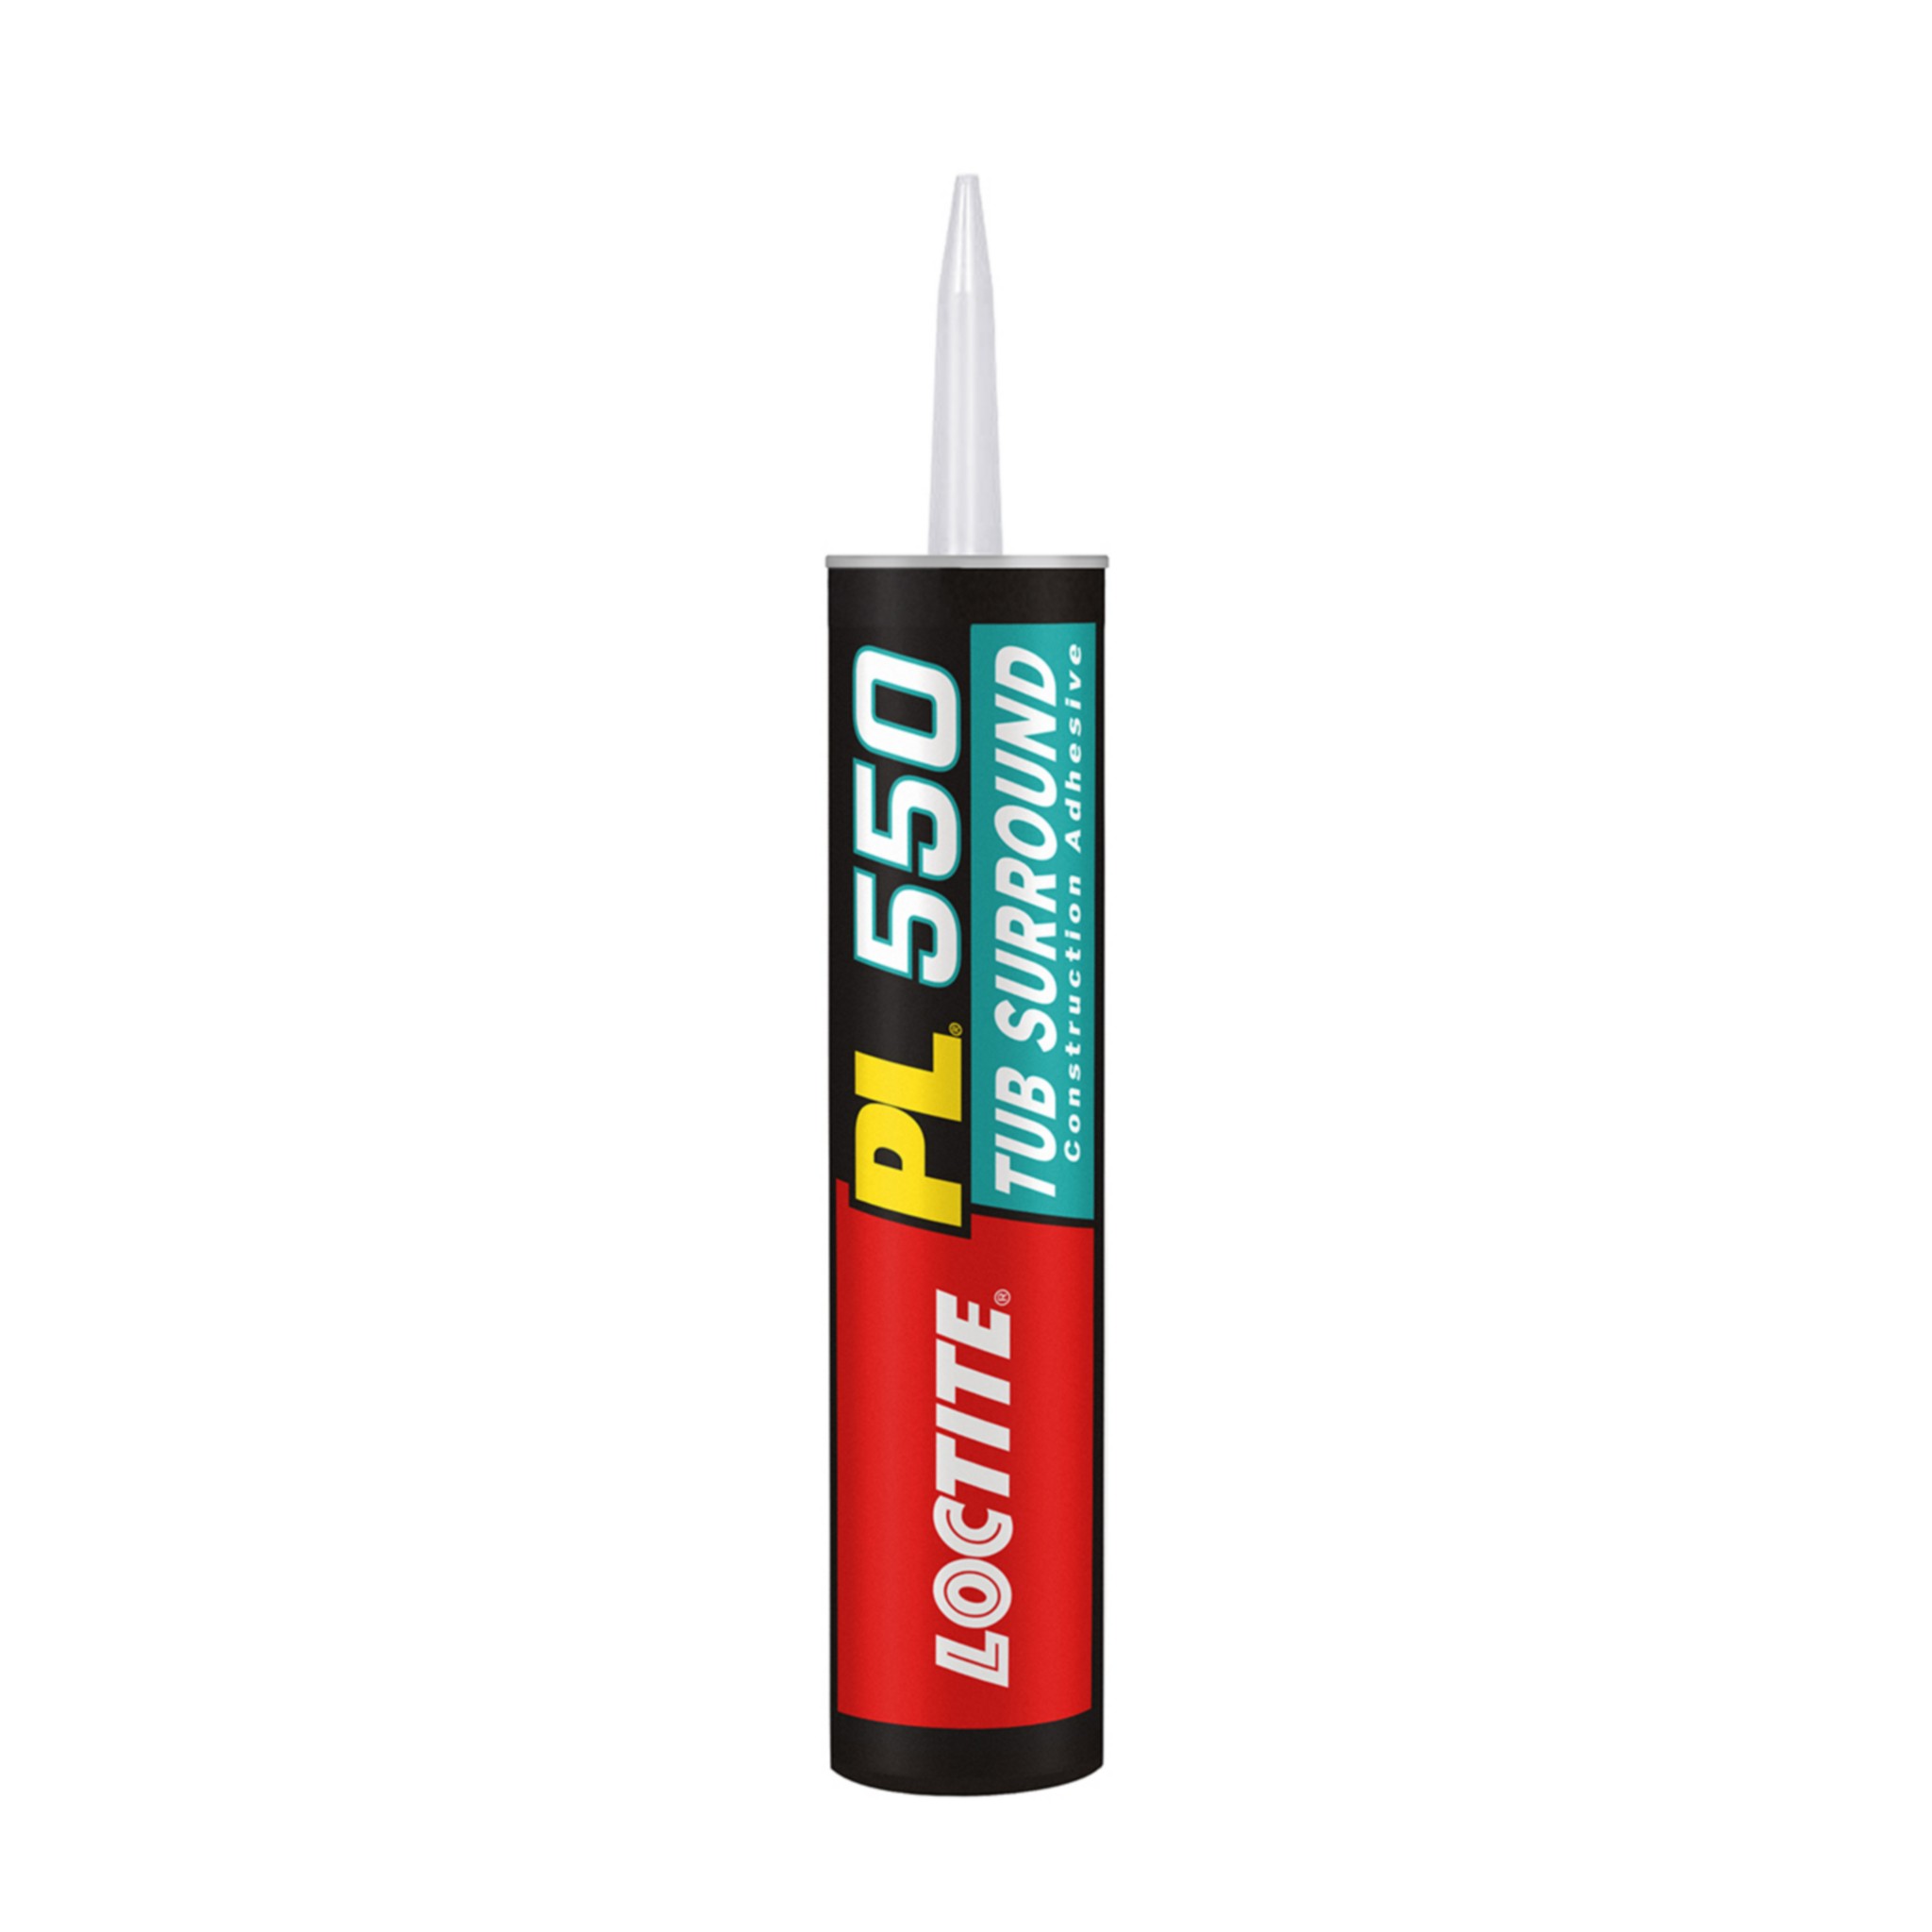 Loctite Pl 550 Tub Surround Adhesive, Best Glue For Tub Surround